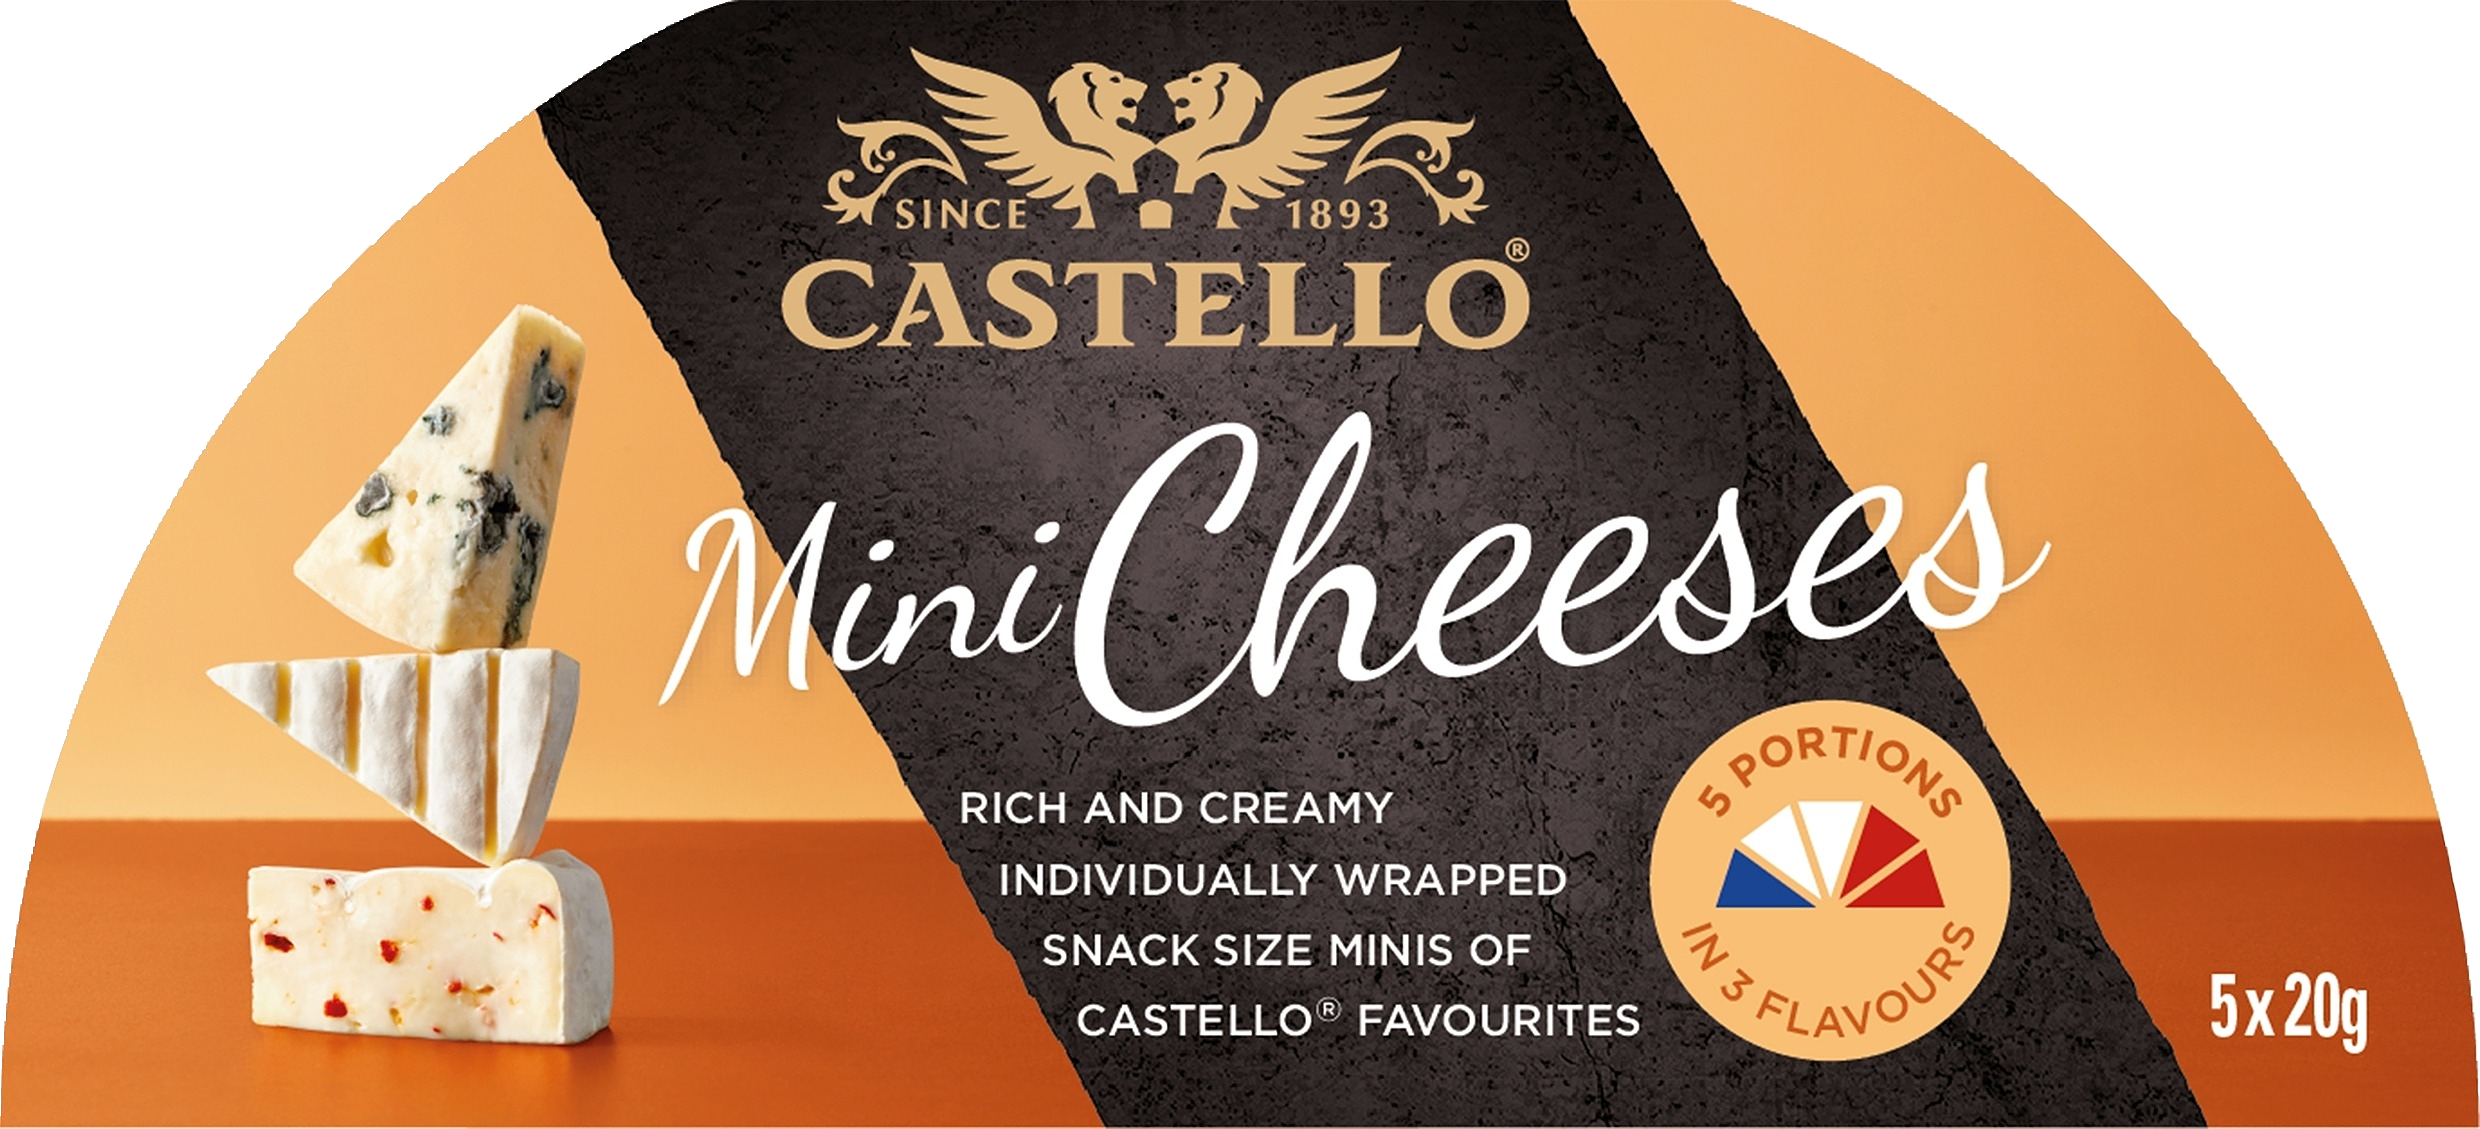 Castello Mini Cheeses 100g 5x20g